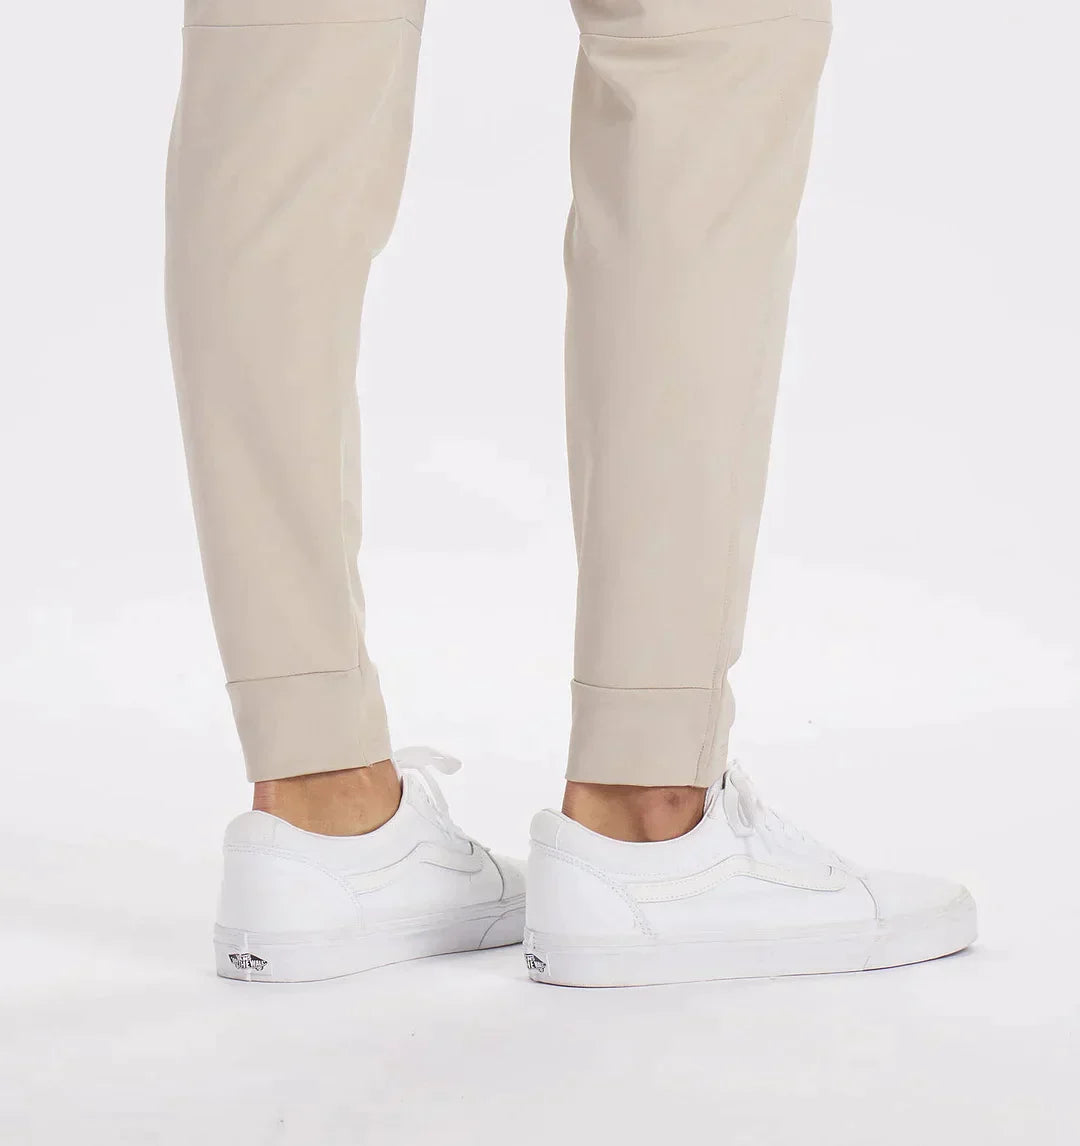 Calvin – stylische Hosen für Herren mit italienischem Design